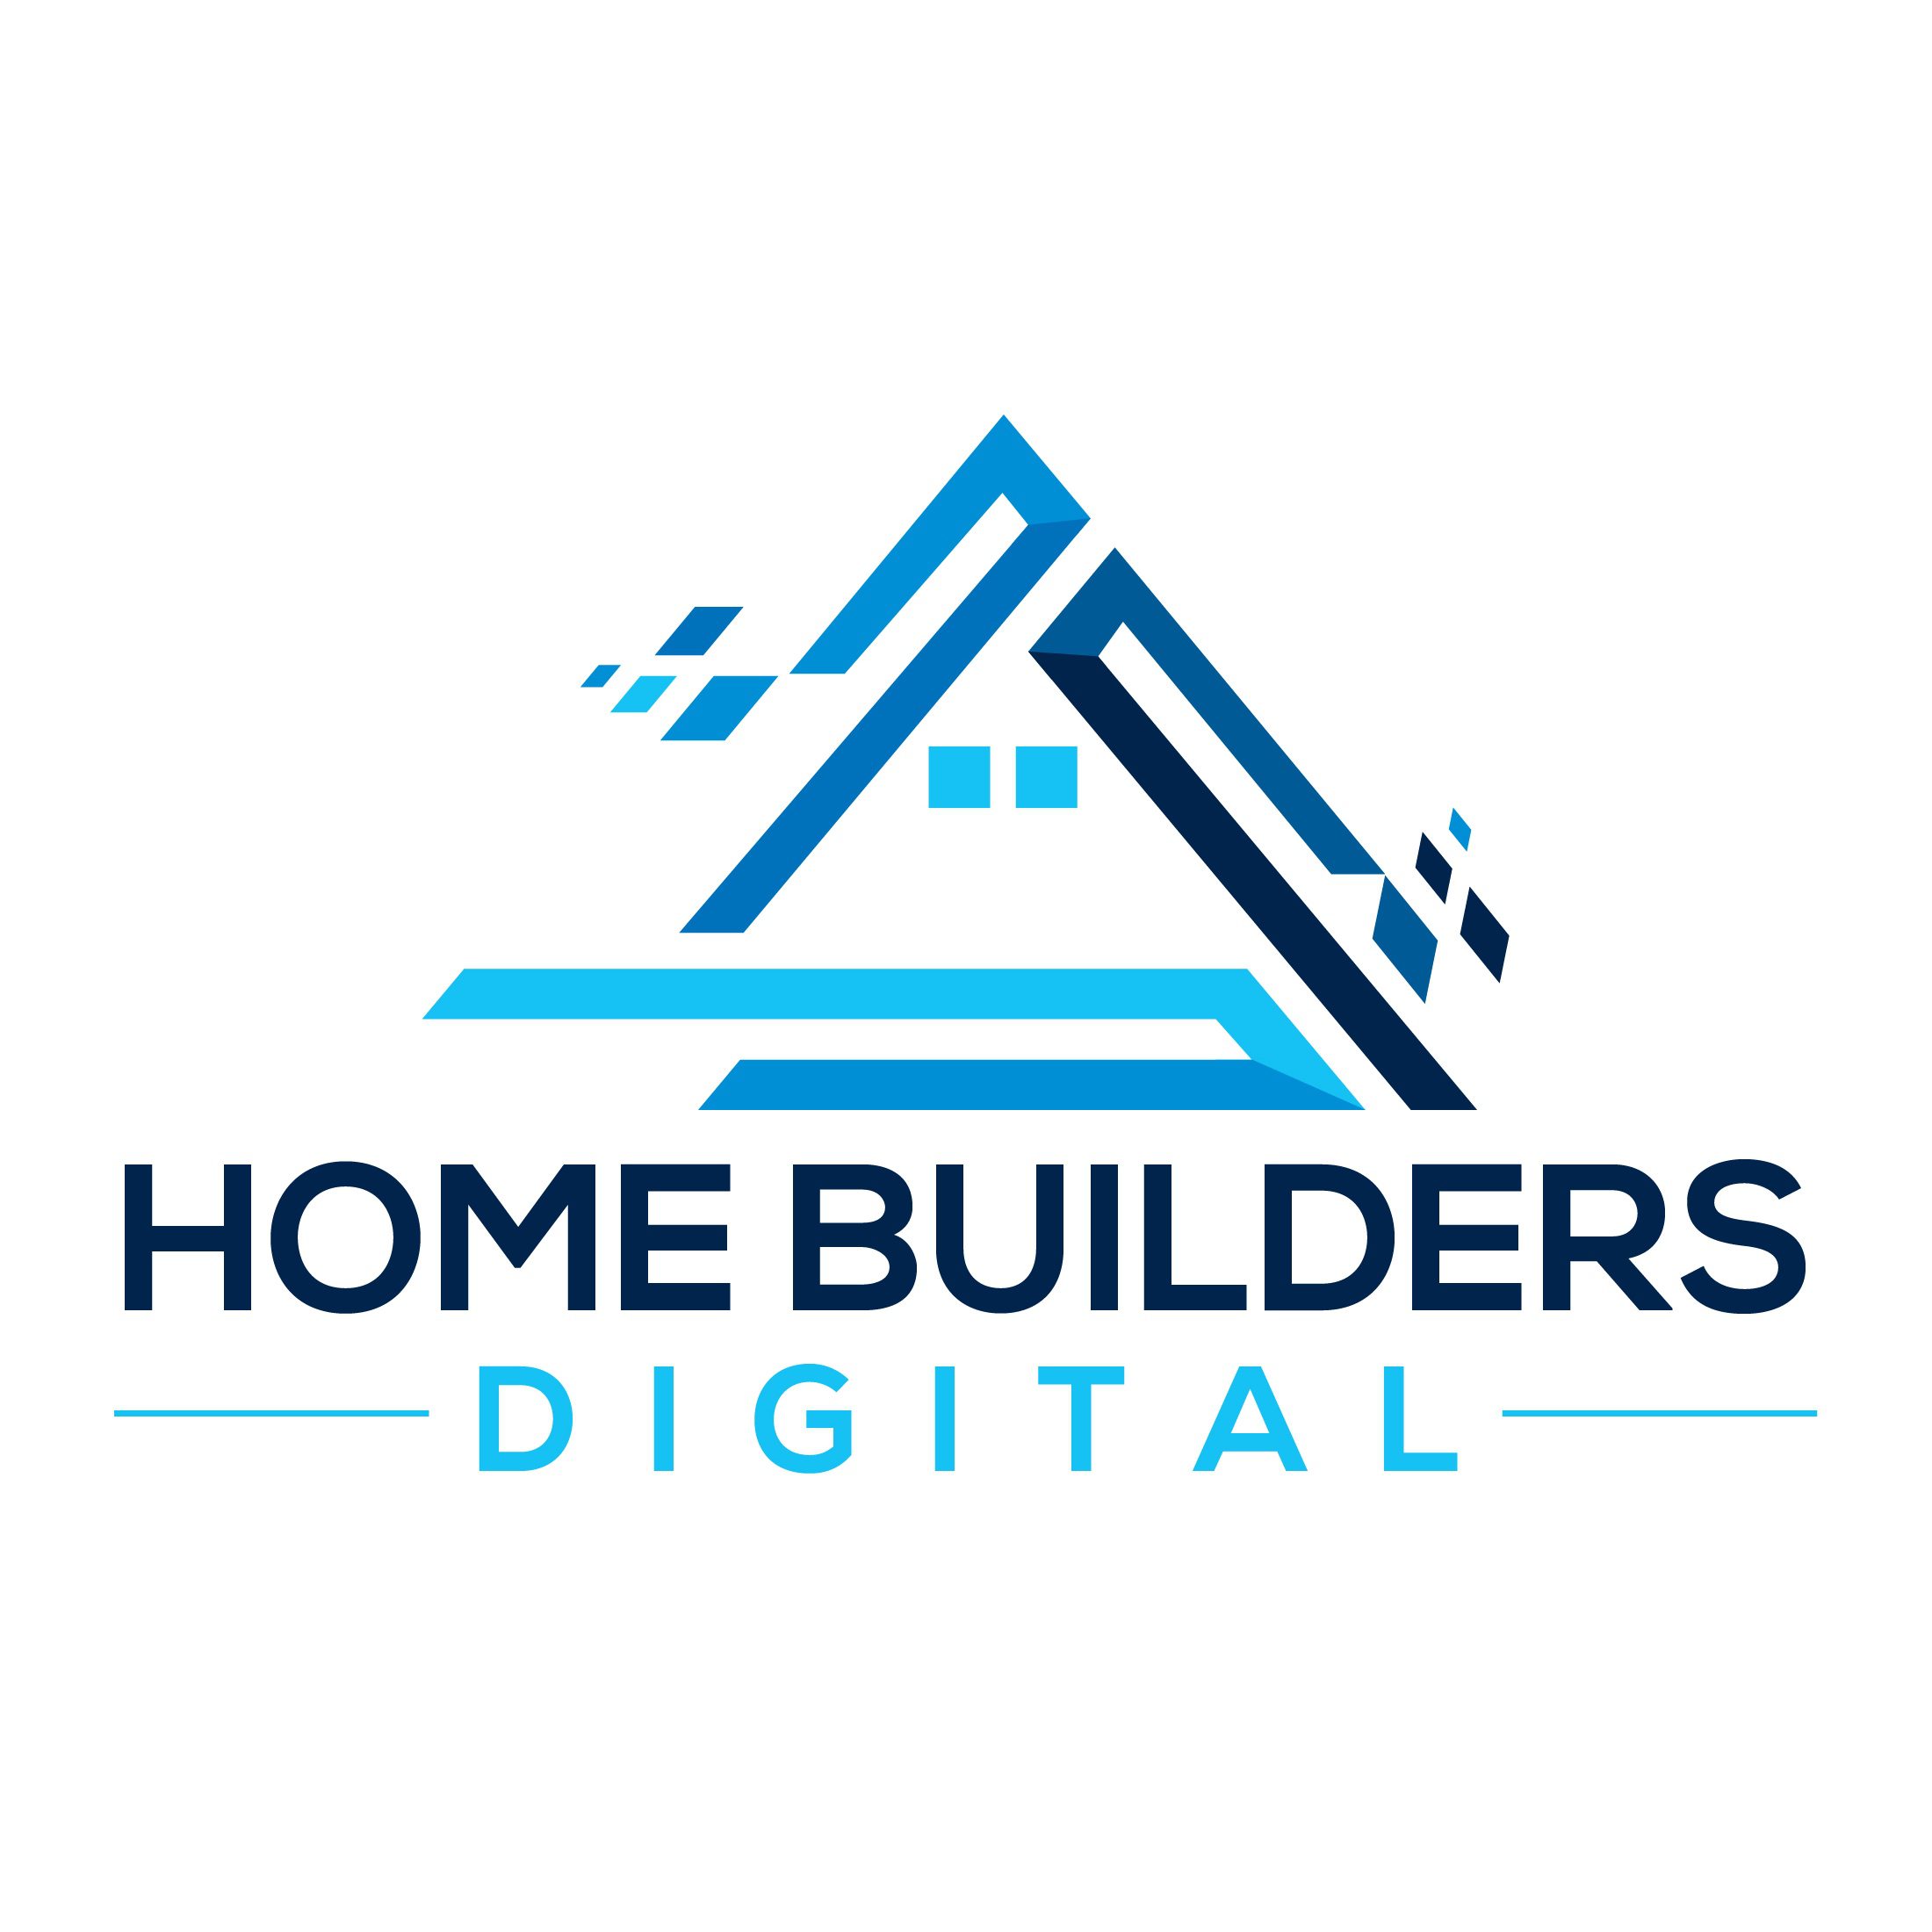 Home Builders Digital Marketing